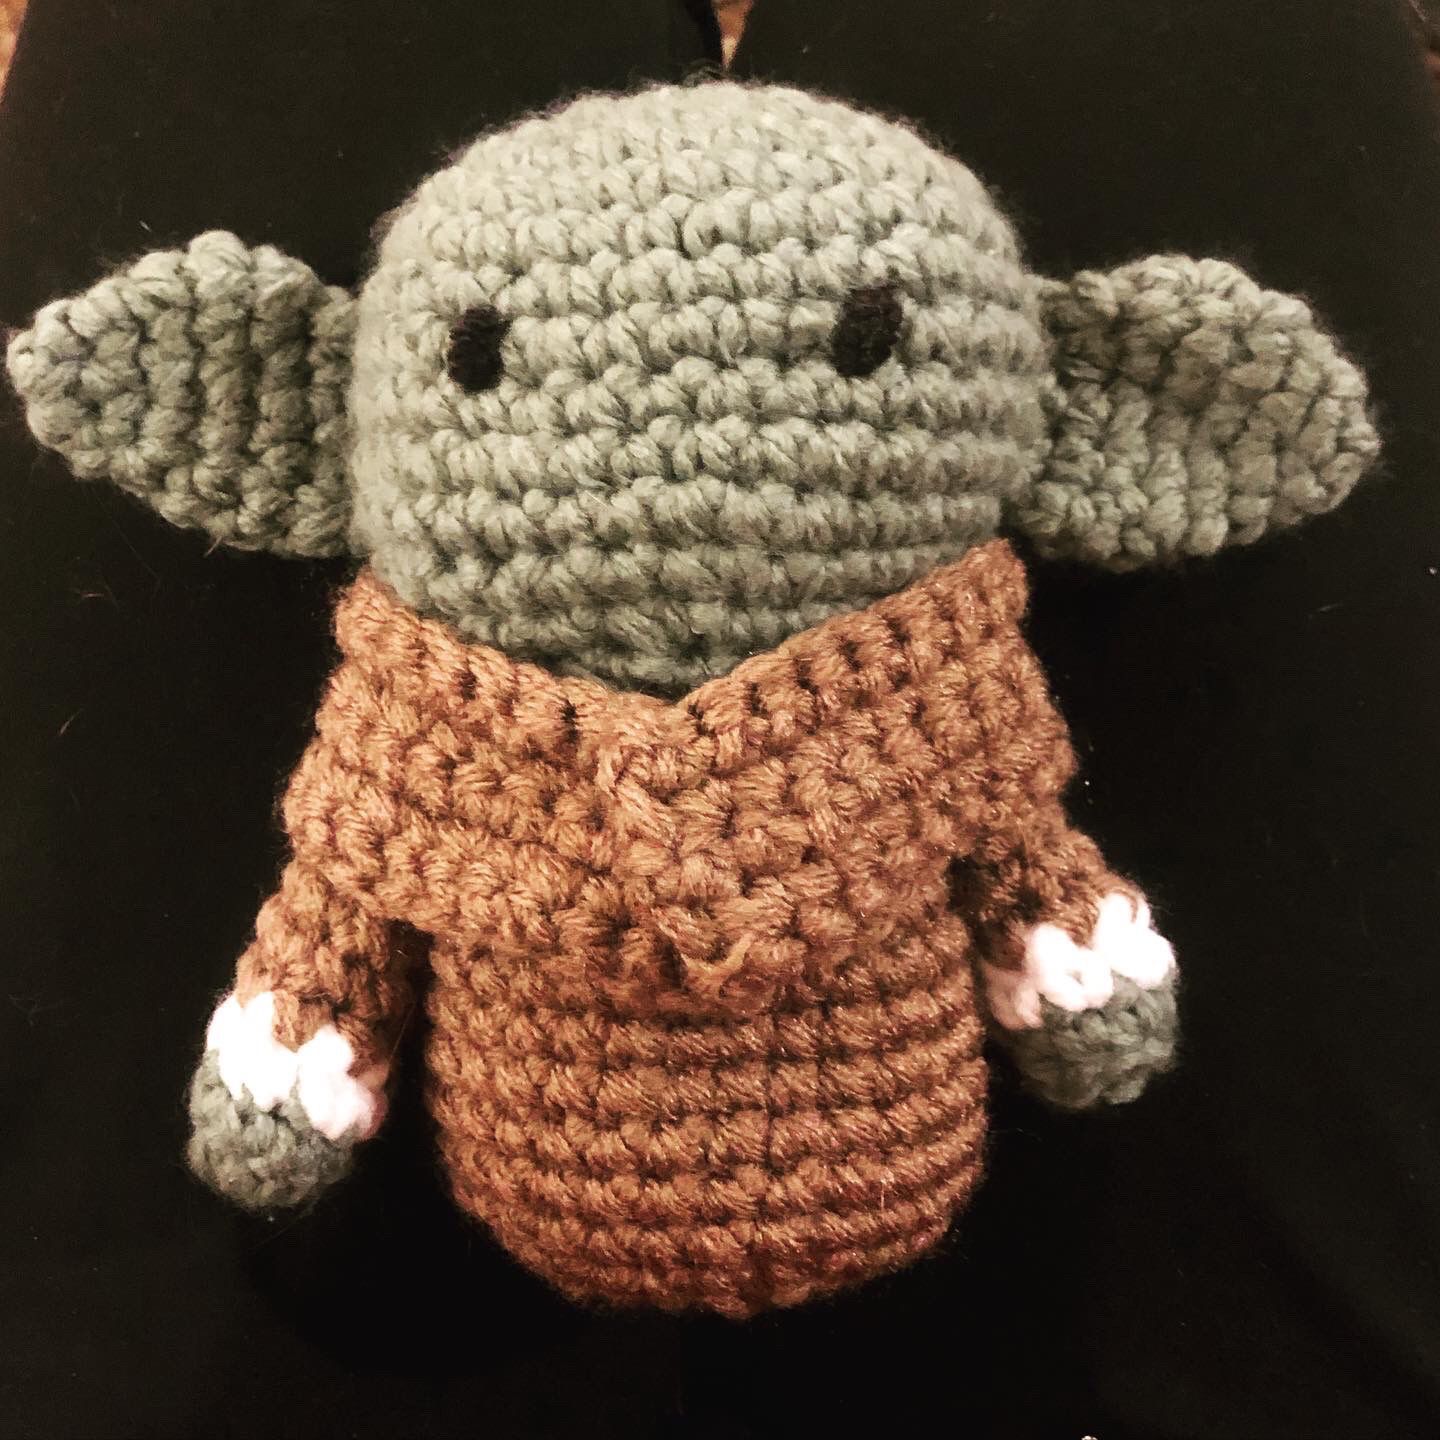 Baby alien - The child - Handmade Crochet 8”